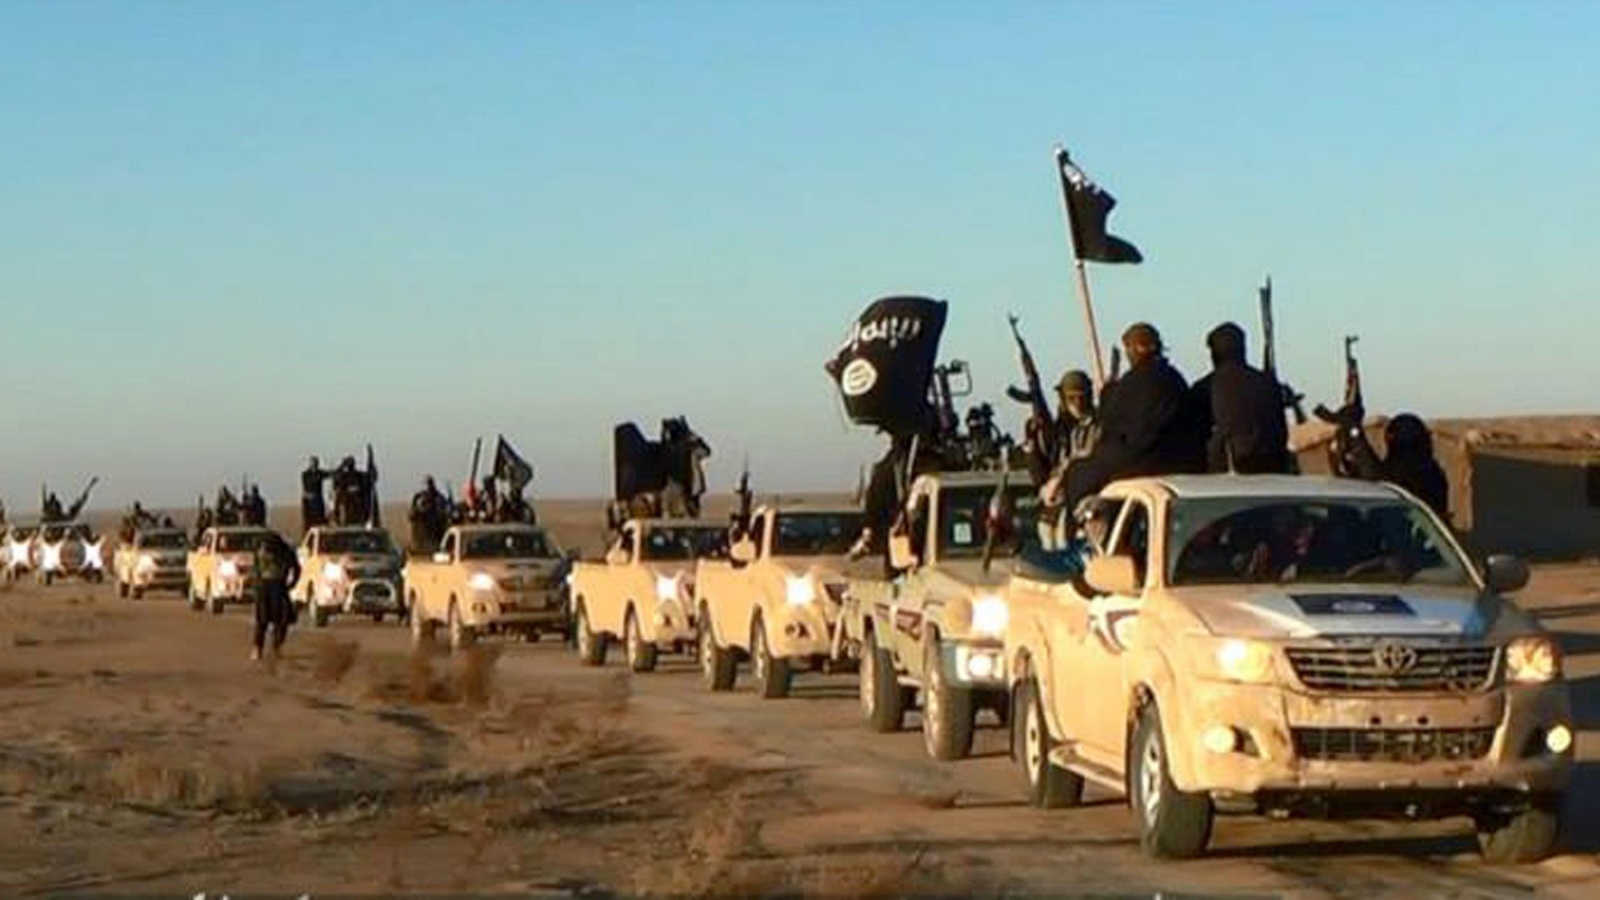 ‪قافلة لمقاتلي تنظيم الدولة بمنطقة الأنبار غربي العراق منتصف 2014‬ قافلة لمقاتلي تنظيم الدولة بمنطقة الأنبار غربي العراق منتصف 2014 (أسوشيتد برس)